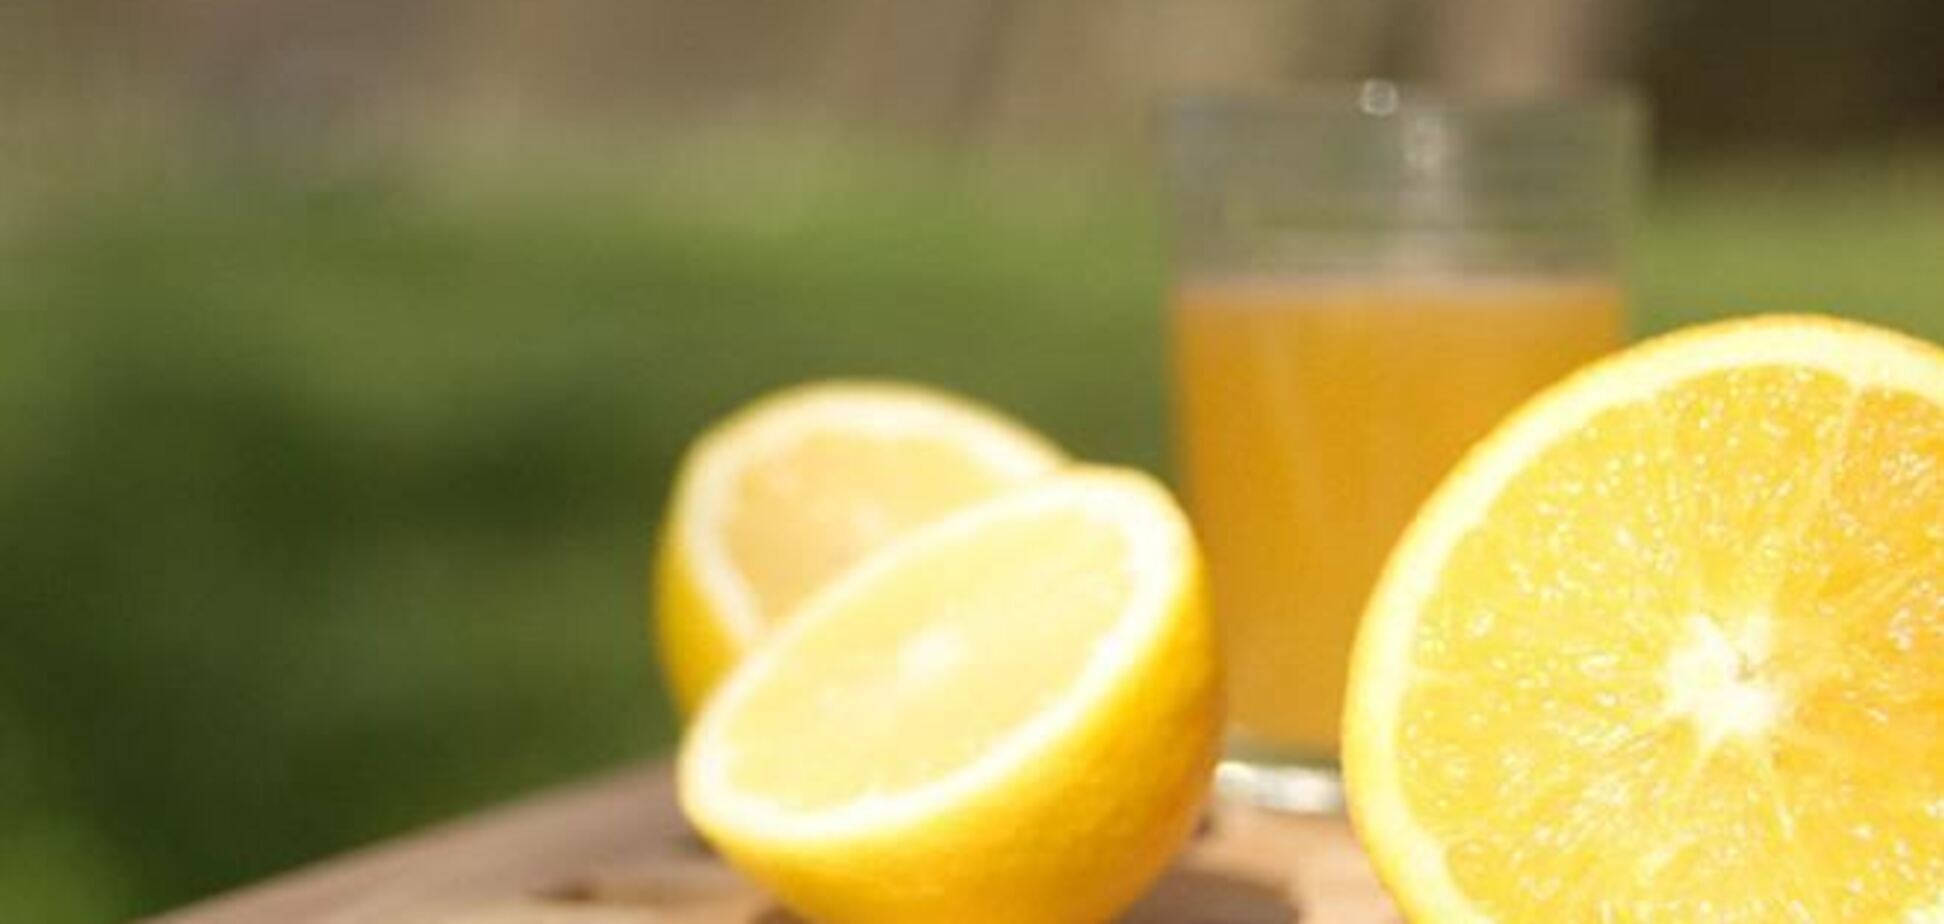 Лекарства нужно запивать лимонадом - ученые